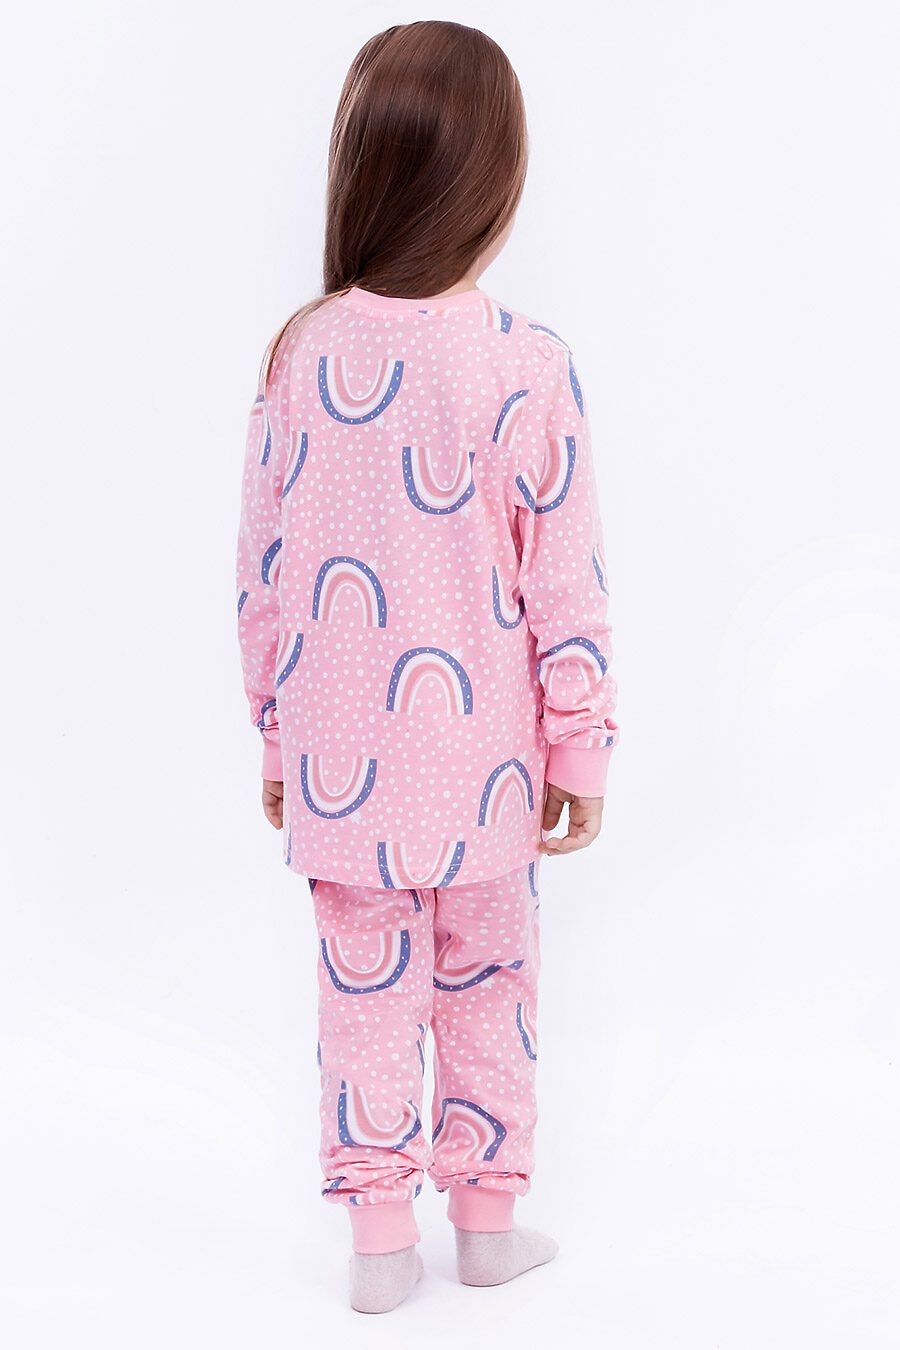 Пижама для девочек ELEMENTARNO 742814 купить оптом от производителя. Совместная покупка детской одежды в OptMoyo